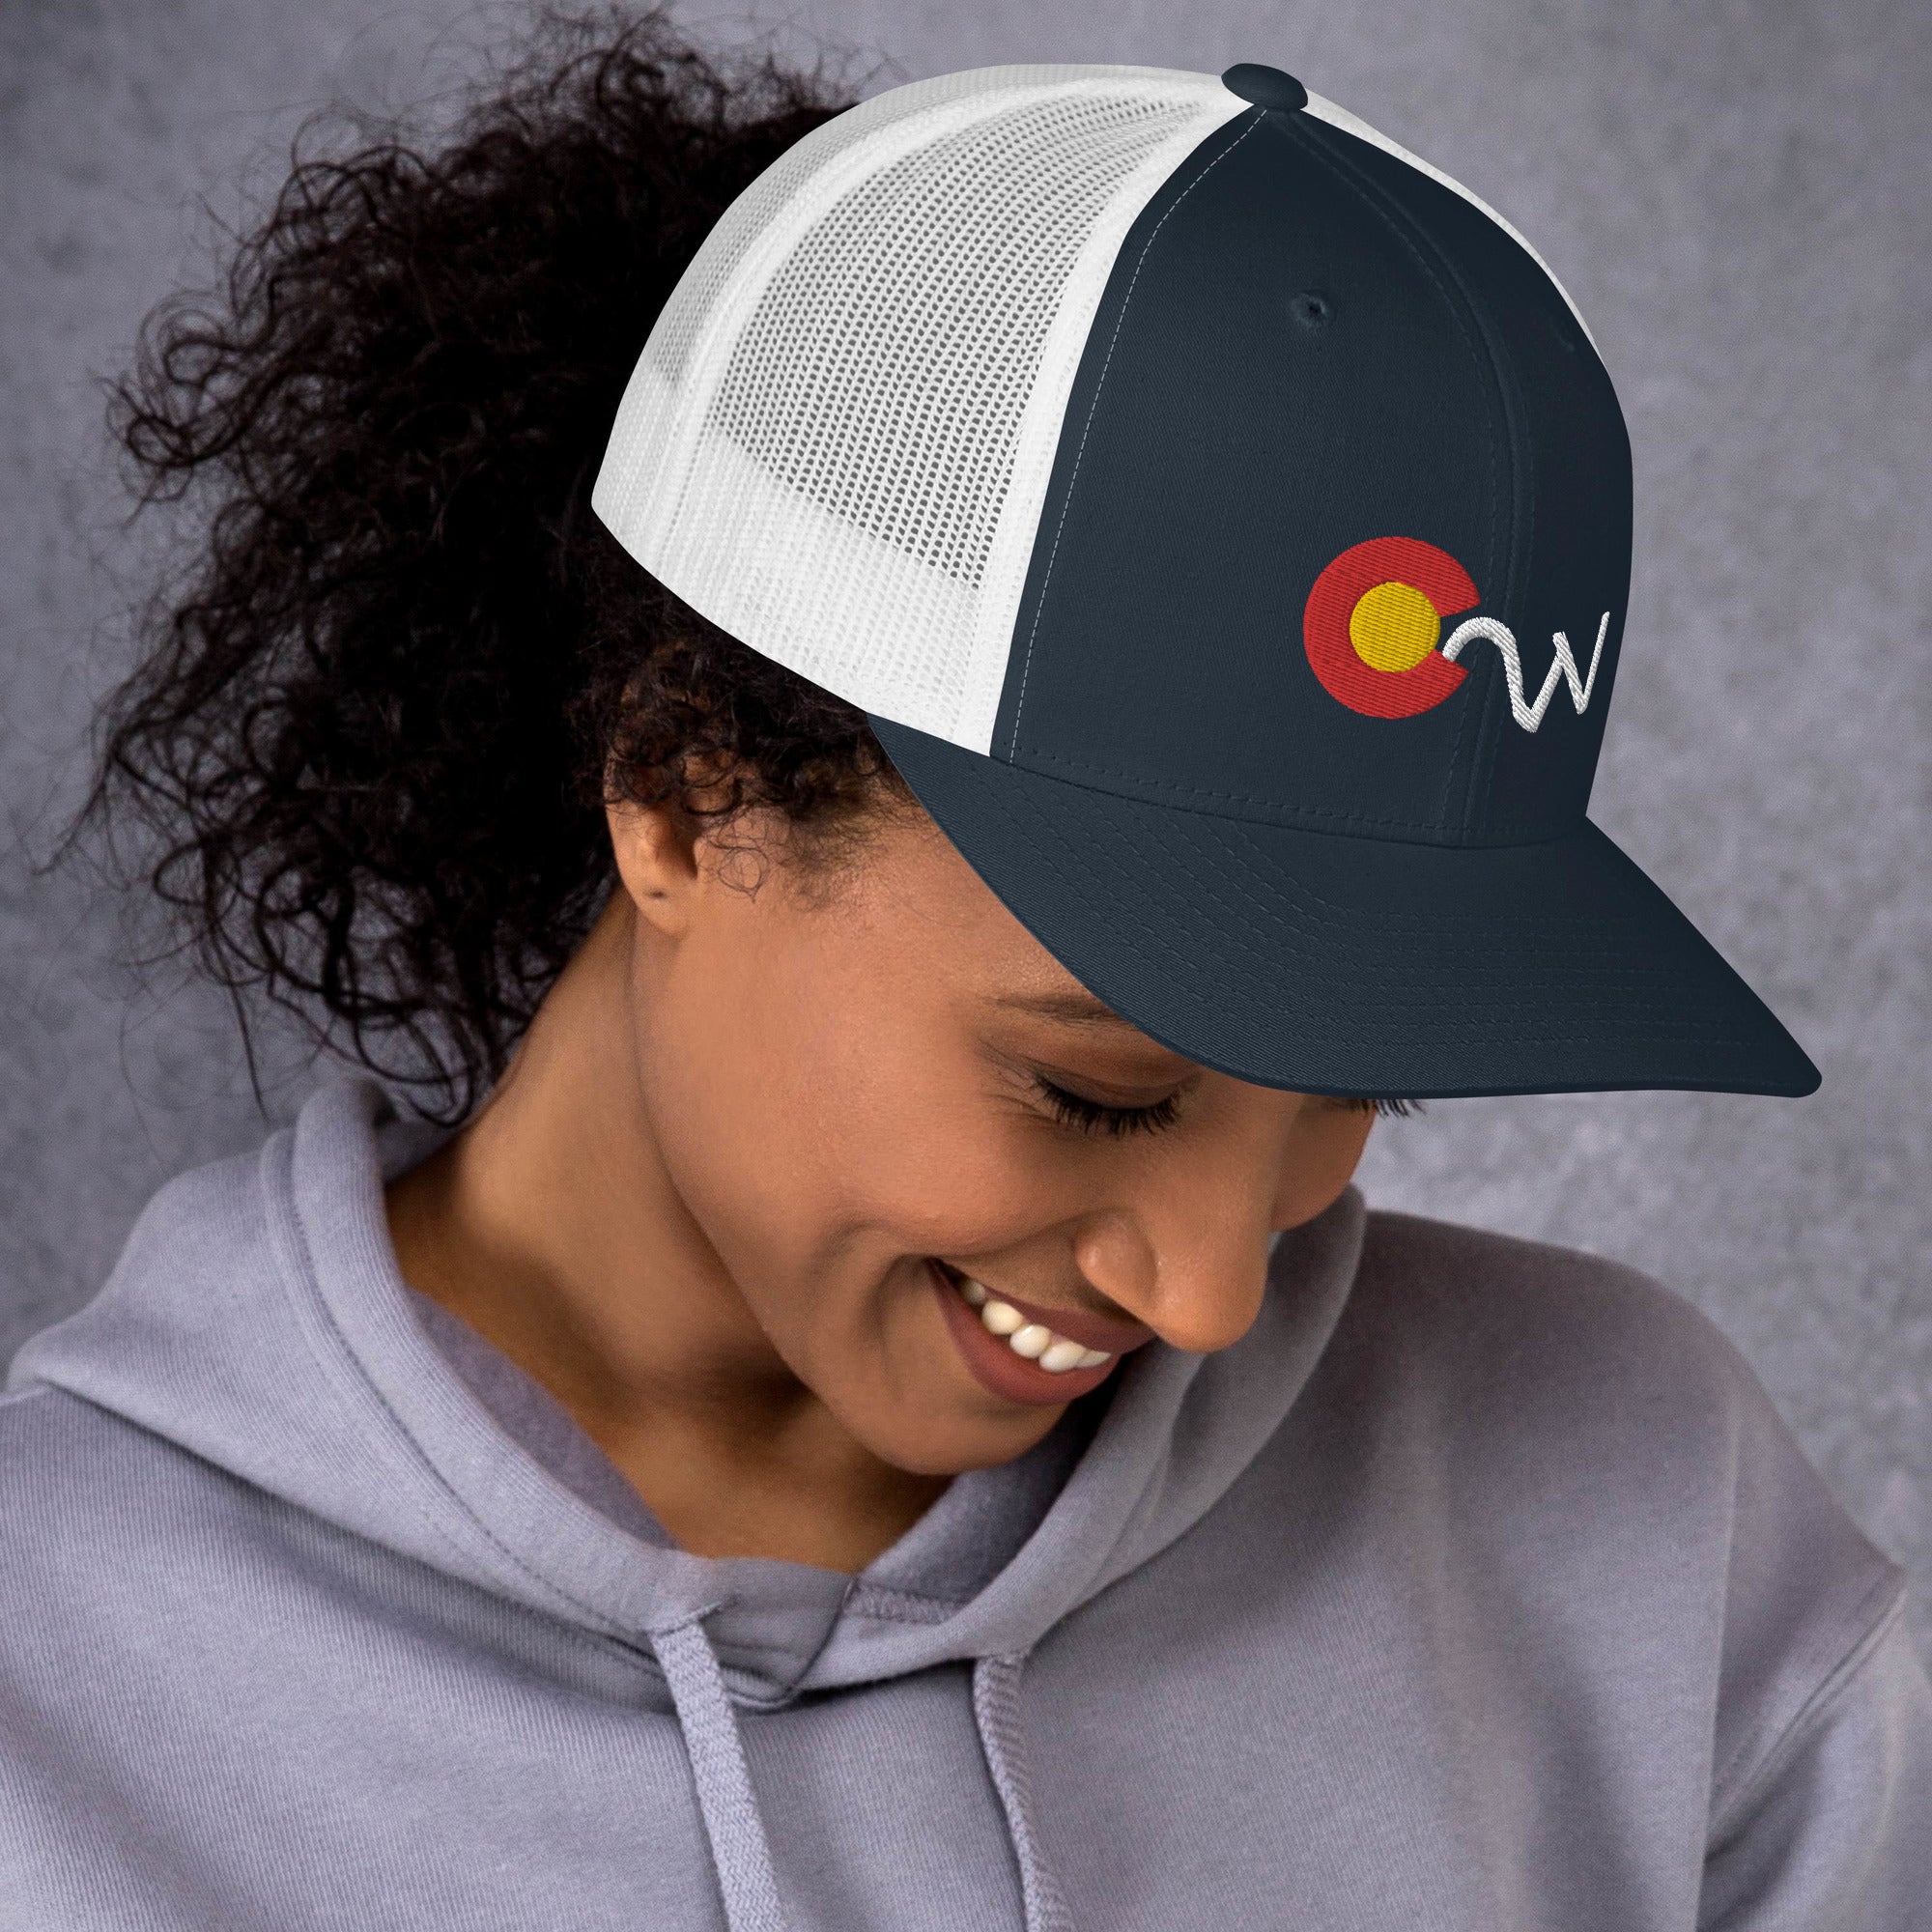 C2W- Colorado C2W Mesh Hat (Unisex)